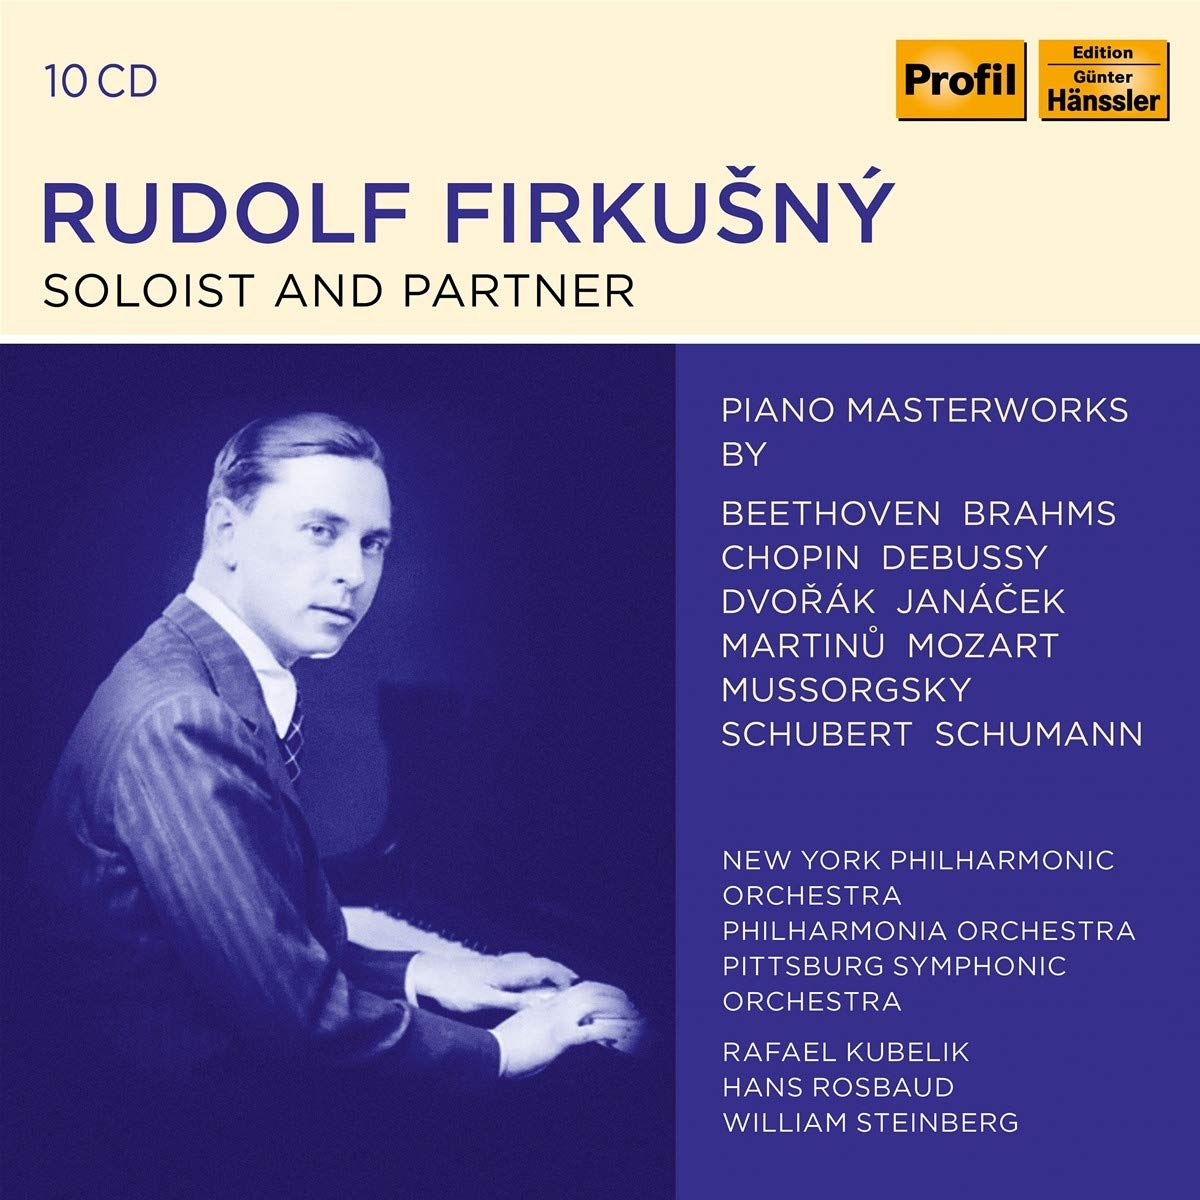 Audio Cd Rudolf Firkusny: Soloist And Partner (10 Cd) NUOVO SIGILLATO, EDIZIONE DEL 24/07/2020 SUBITO DISPONIBILE